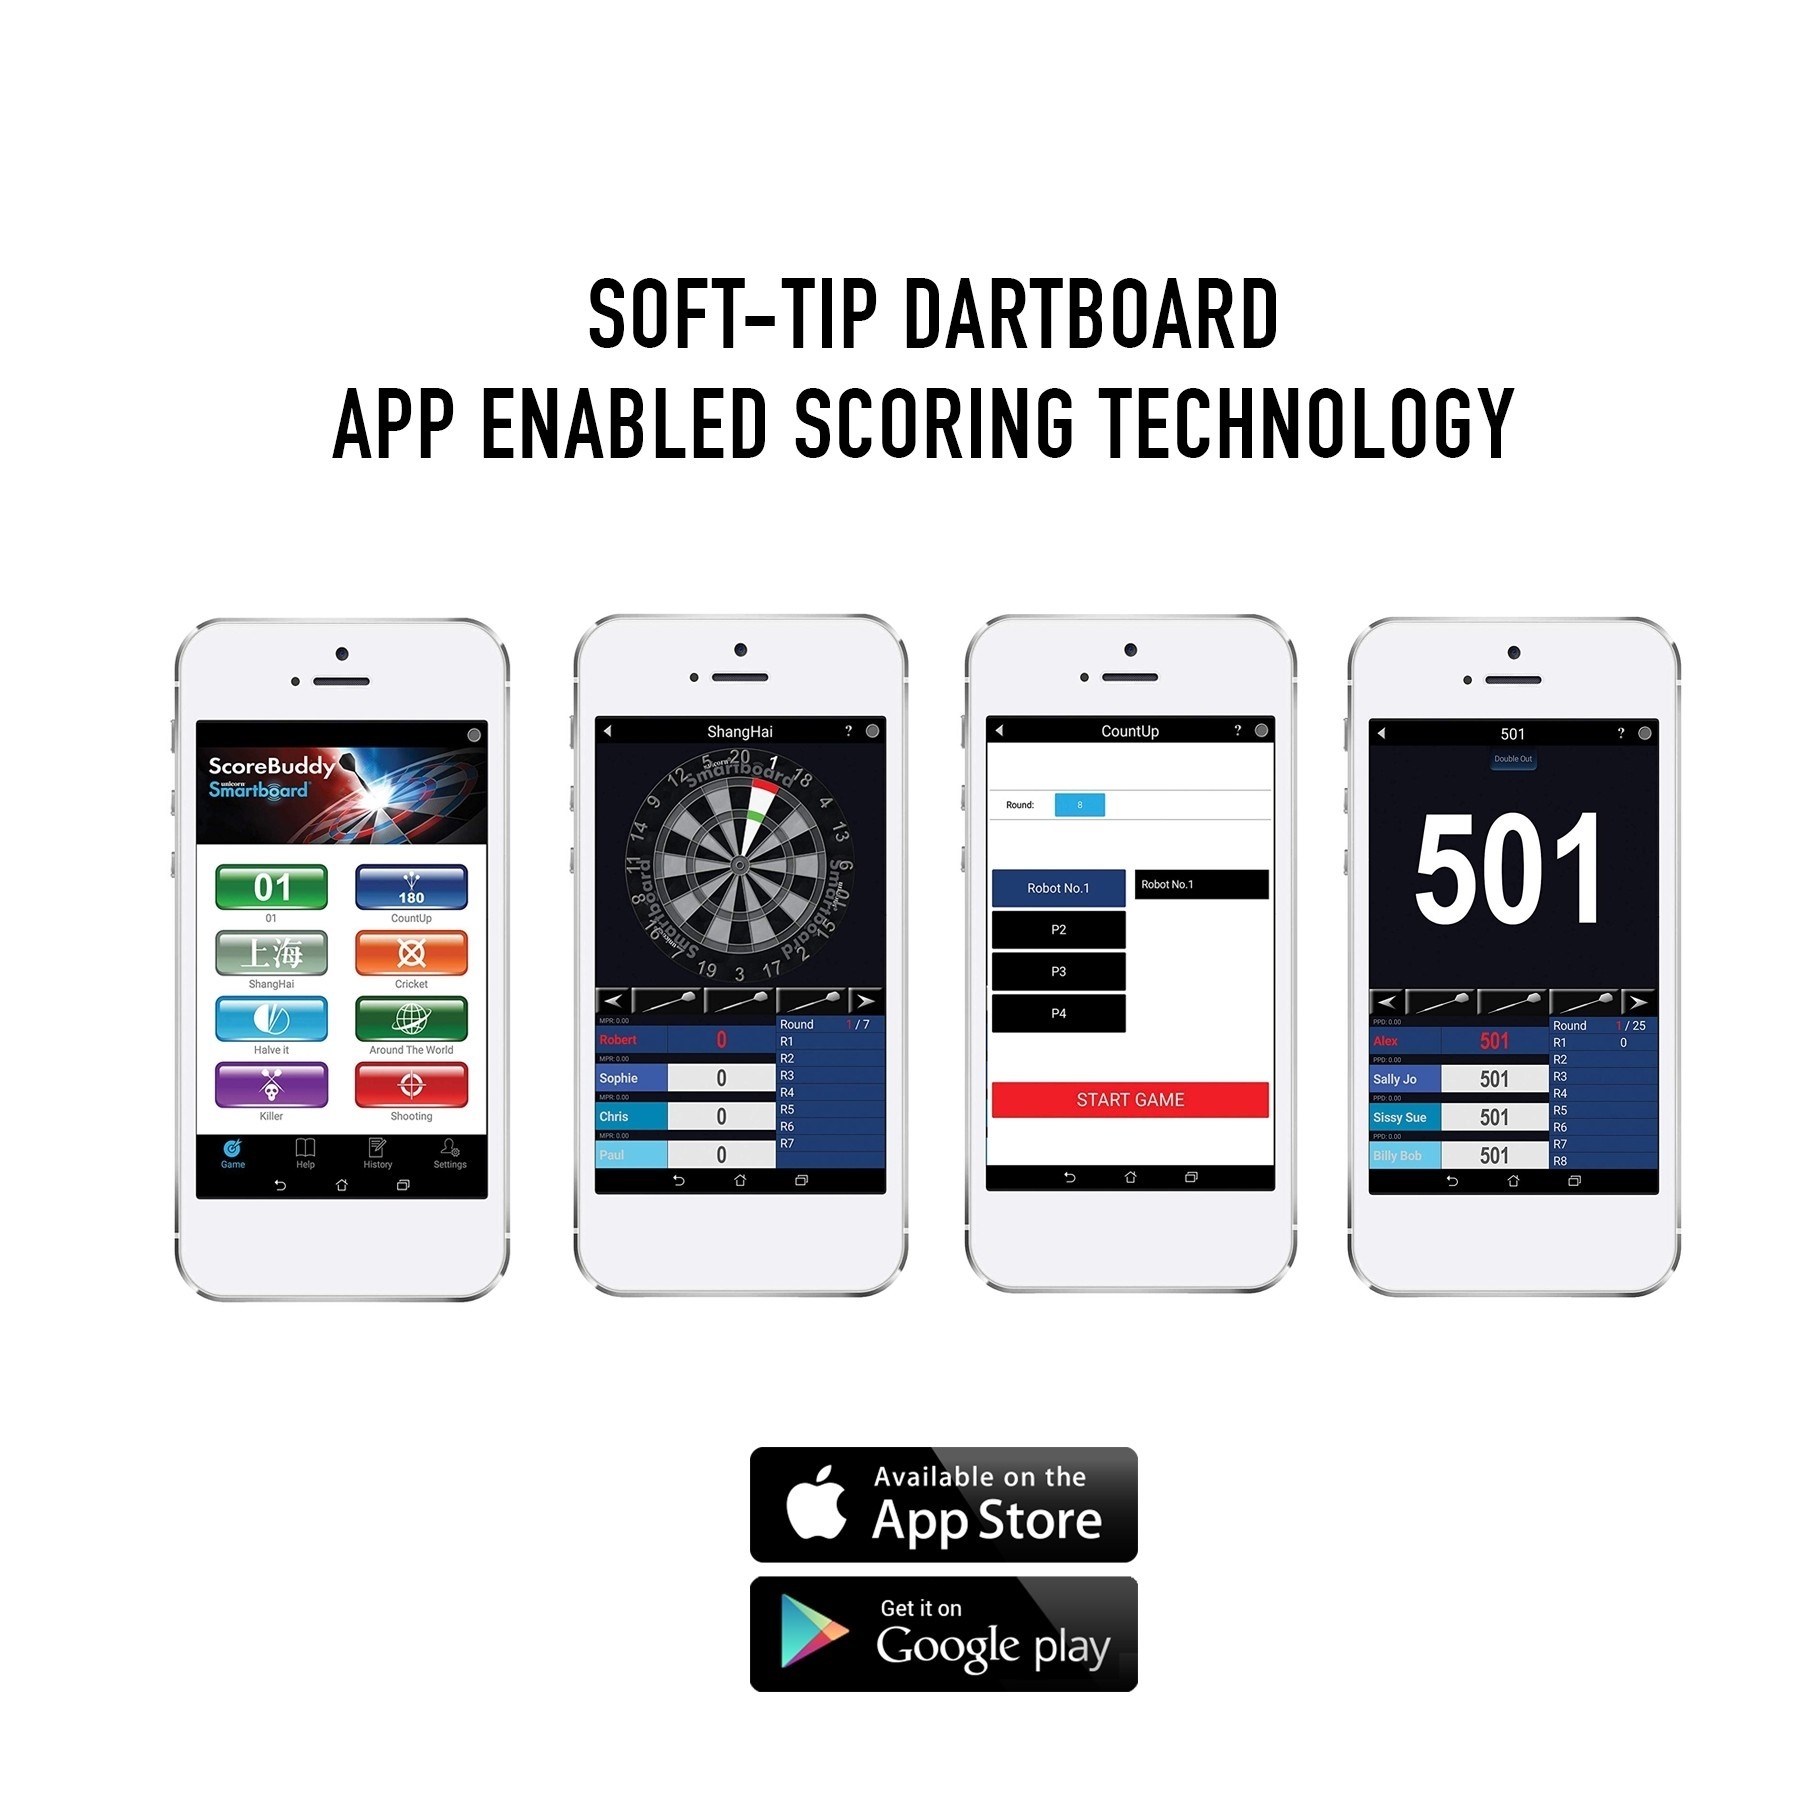 Smartboard App